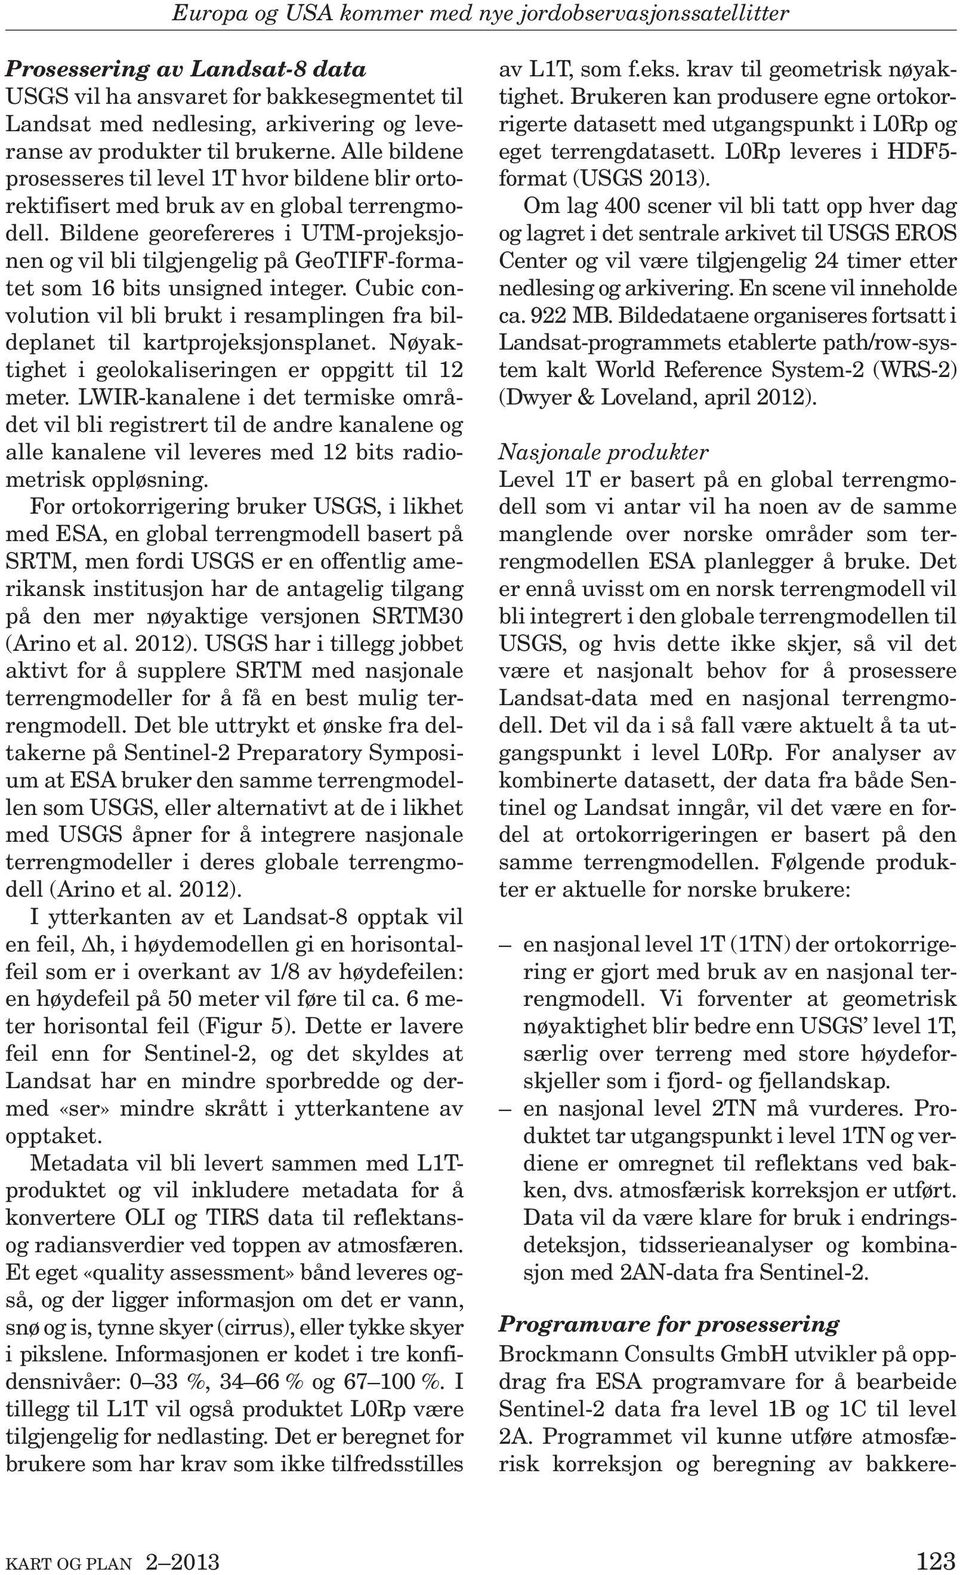 begrensede lisensrettigheter vil den kun korrigere data fra Sentinel og ikke fra Landsat (Brockmann, pers. comm., 6. mars 2013).